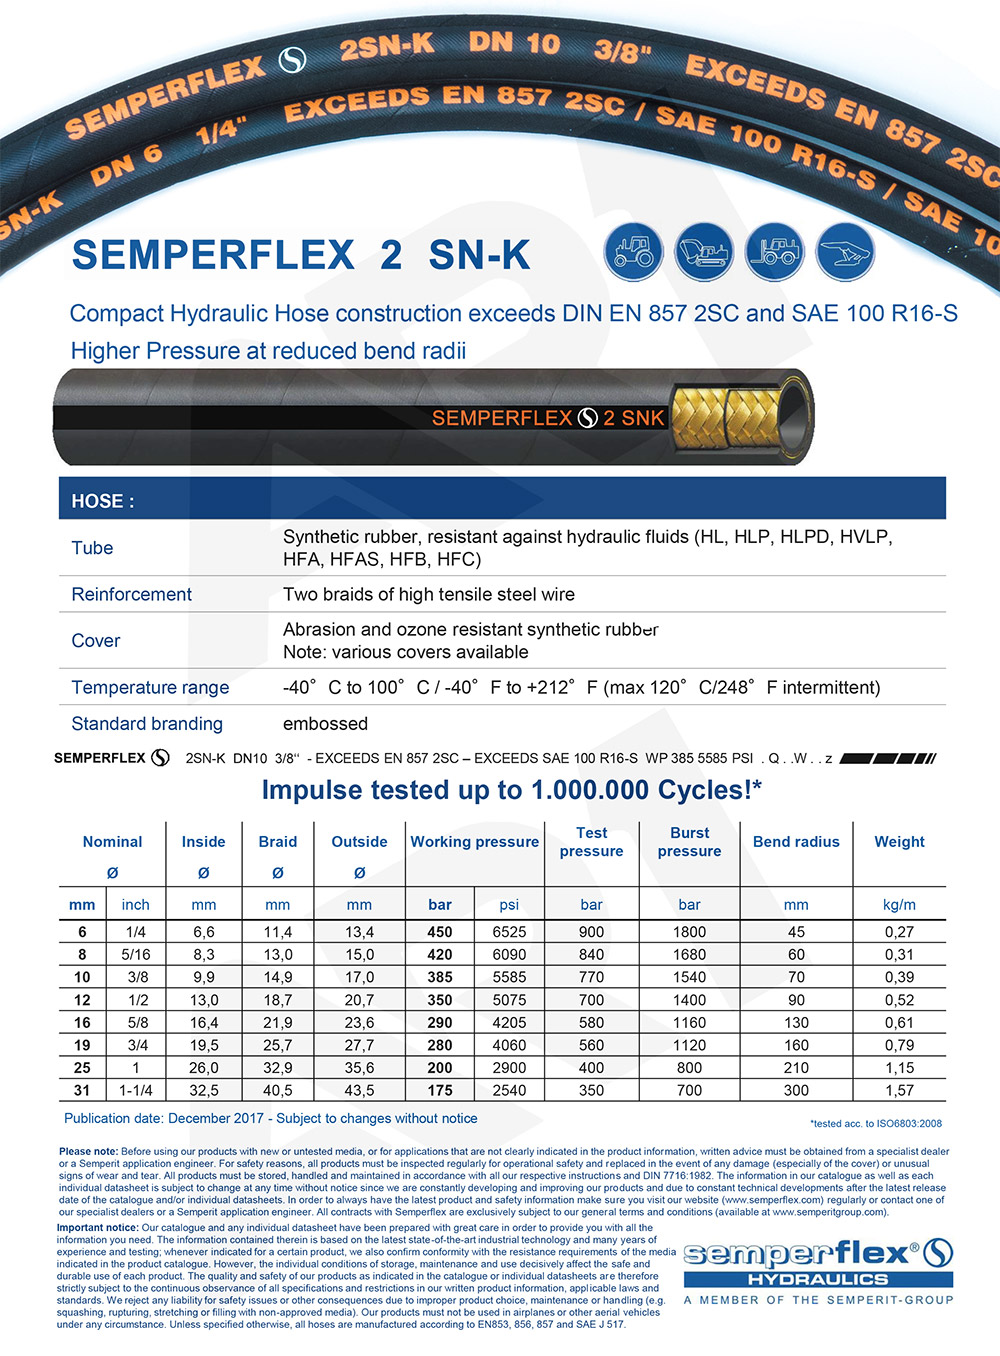 Samperflex 1SN-K